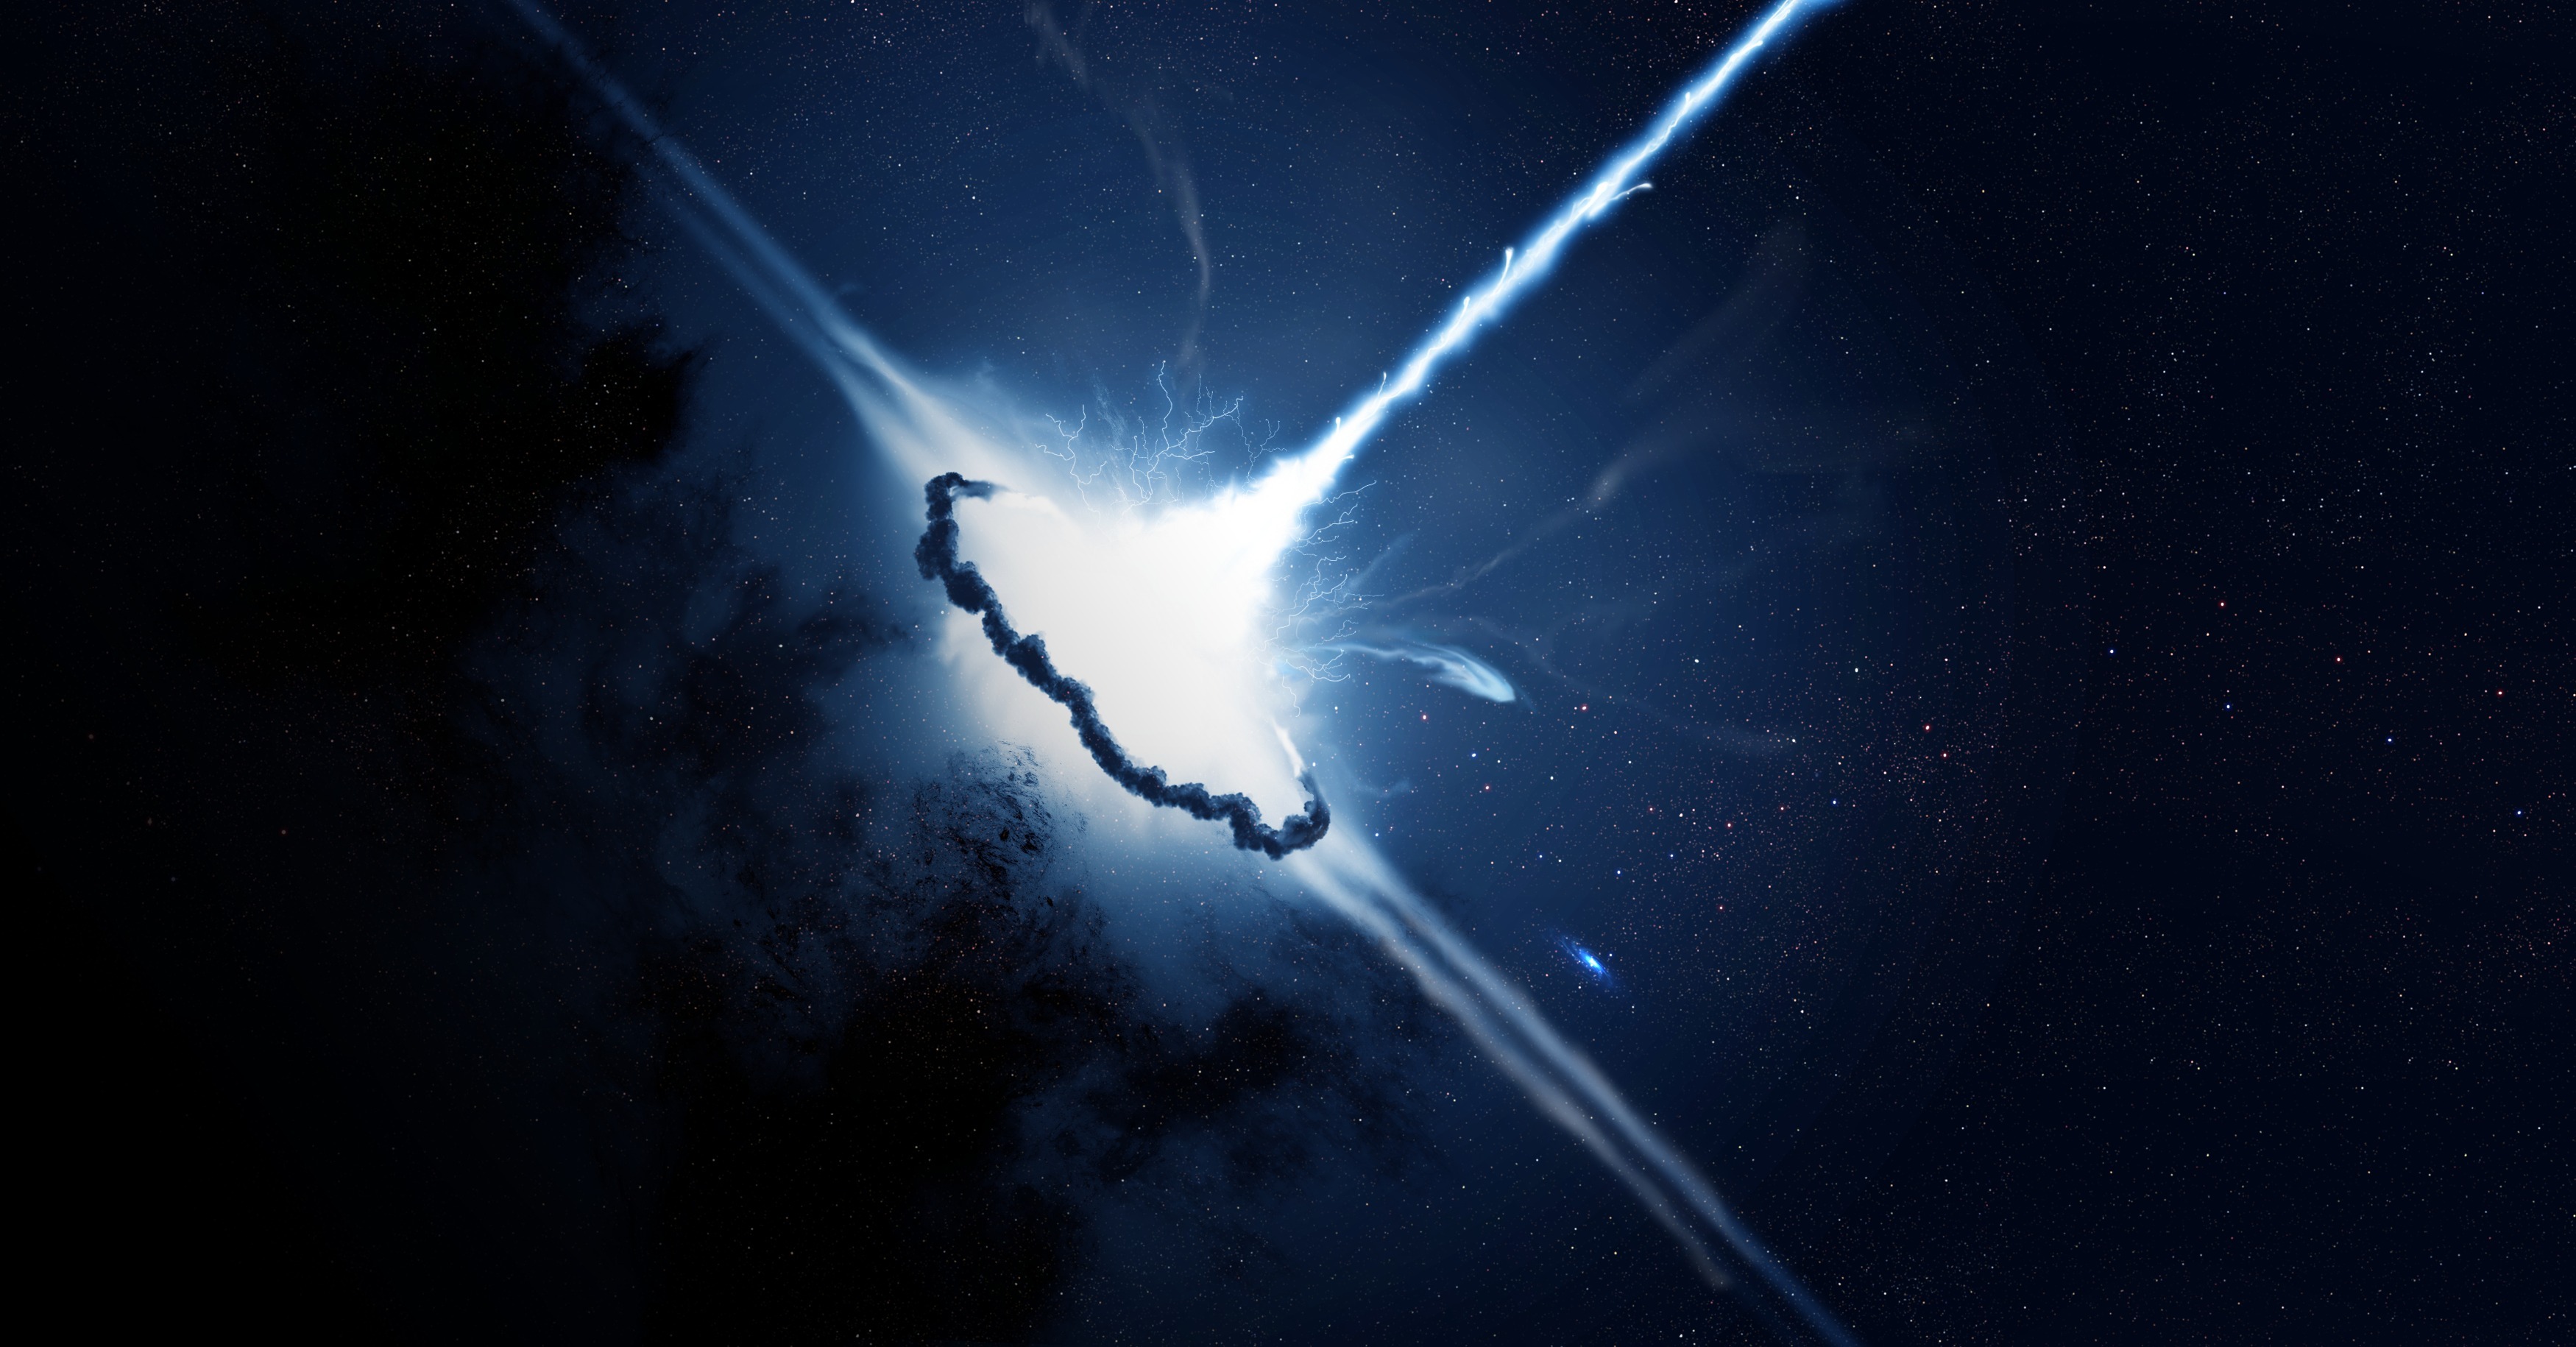 Обои Взрыв квазар звезда картинки на рабочий стол на тему Космос - скачать без смс